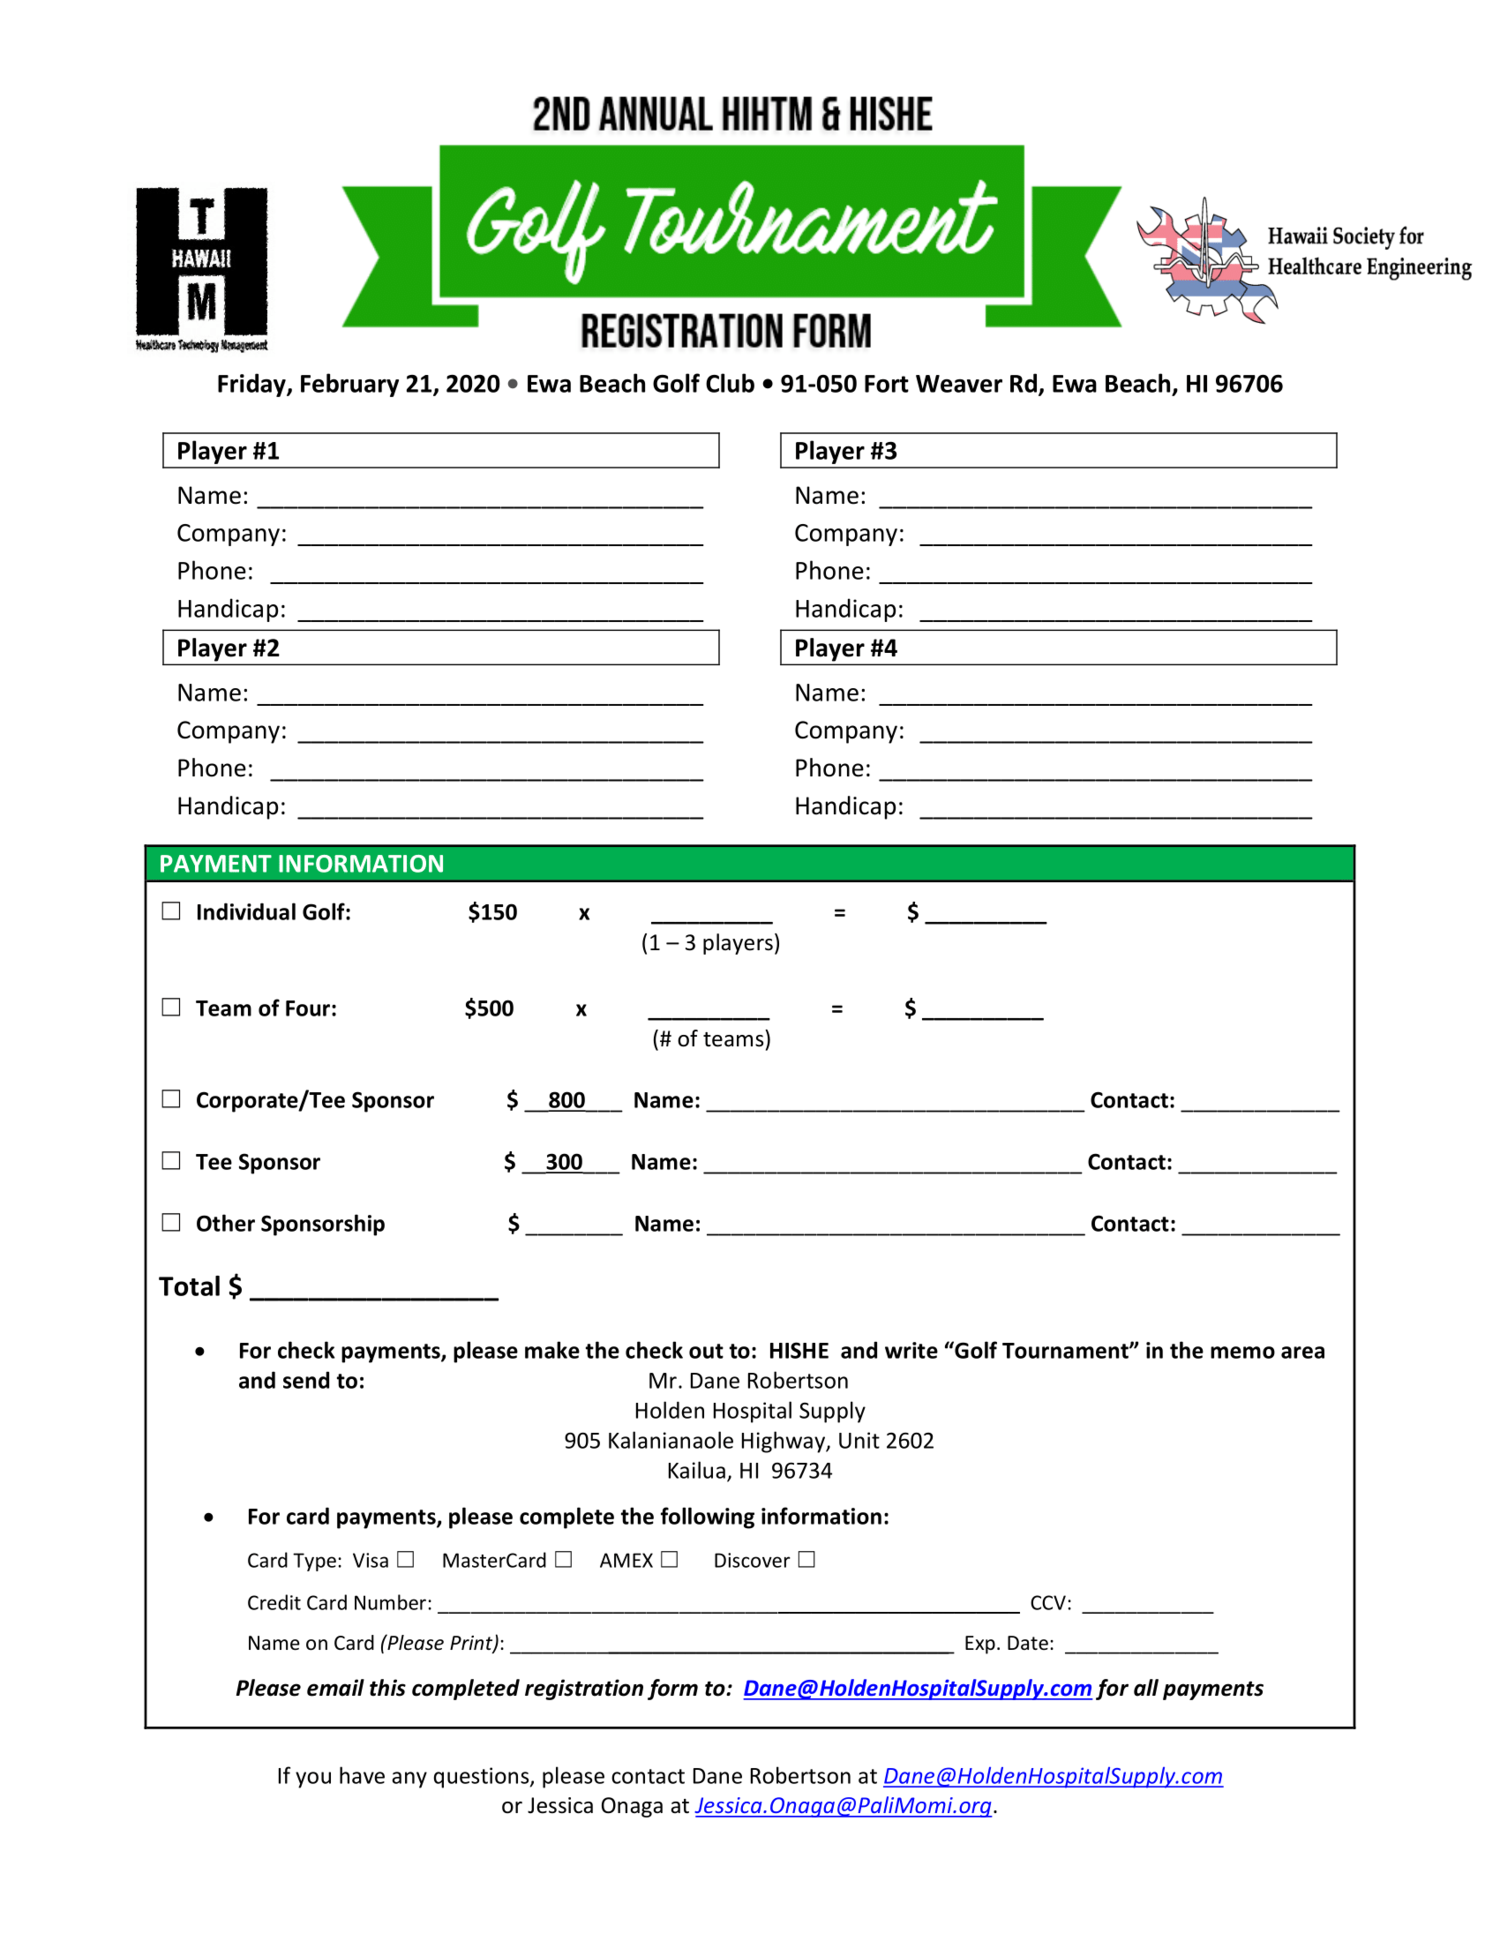 Golf Tournament Registration Form HiHTM